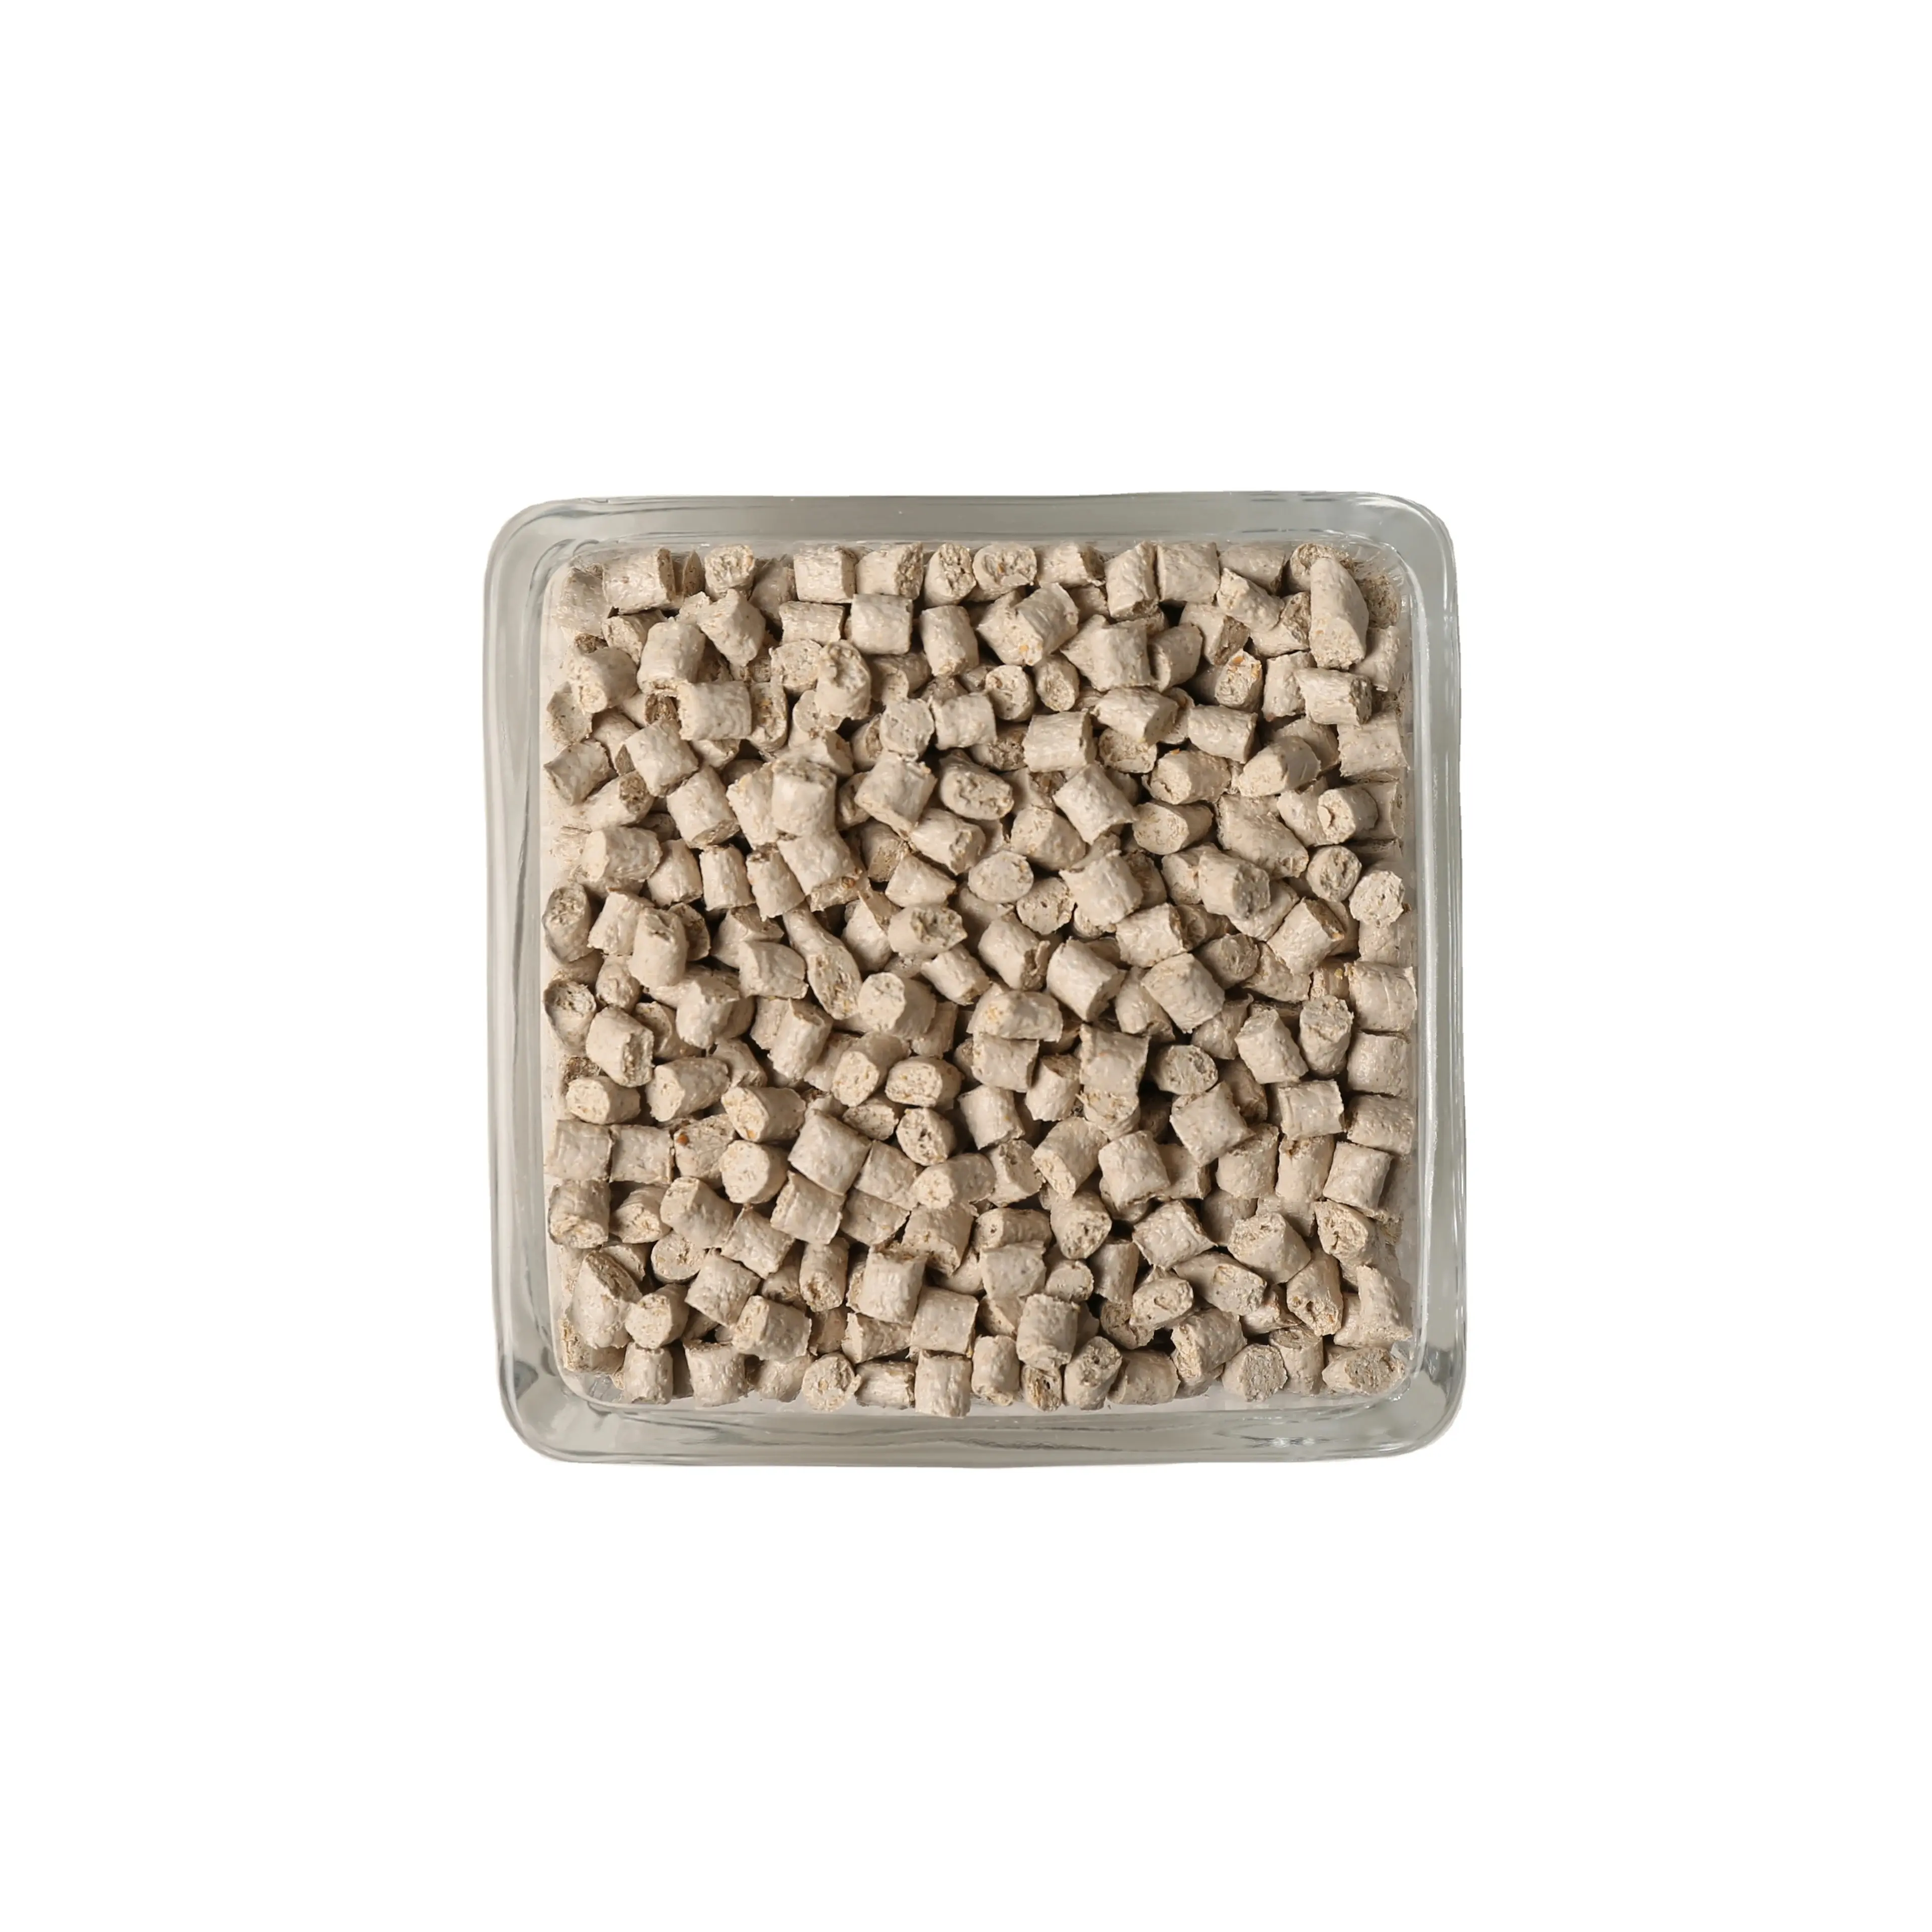 Biomassa modellata ceramica resistente composto pellet contatto cibo robusto odore libero secchio di plastica materia prima